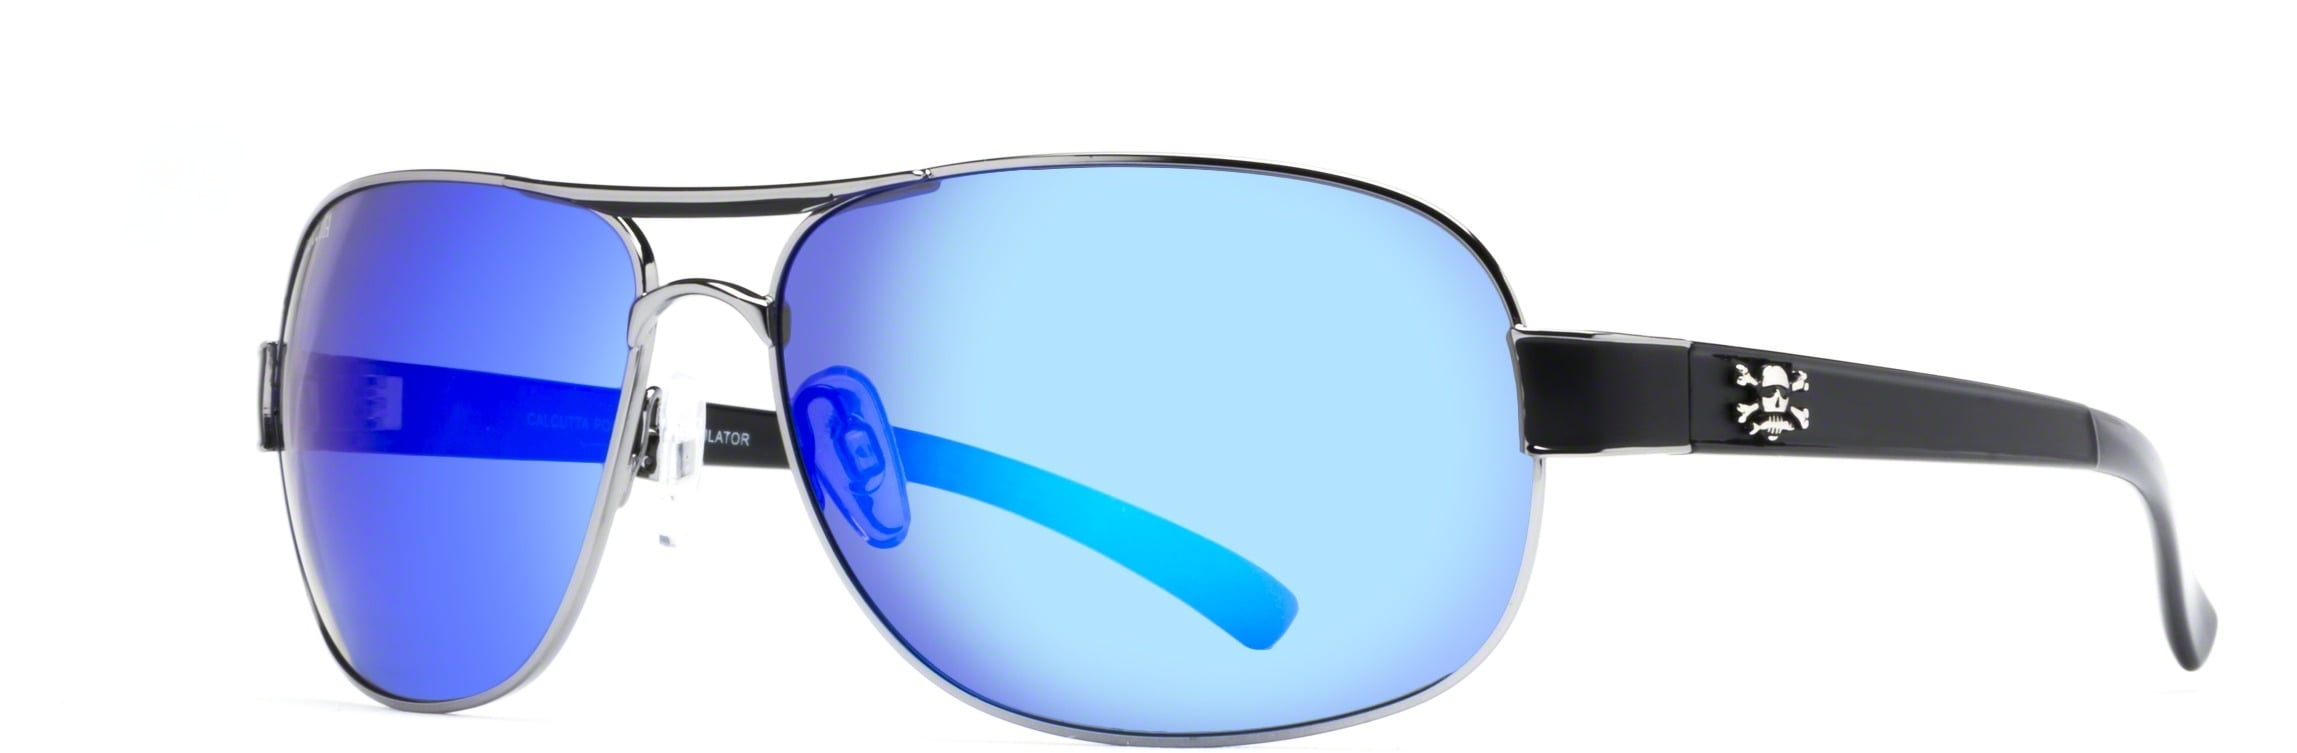 Calcutta Rip Polarized Sunglasses Durable Crystal Frame/Gray 62mm Lens R1CG 